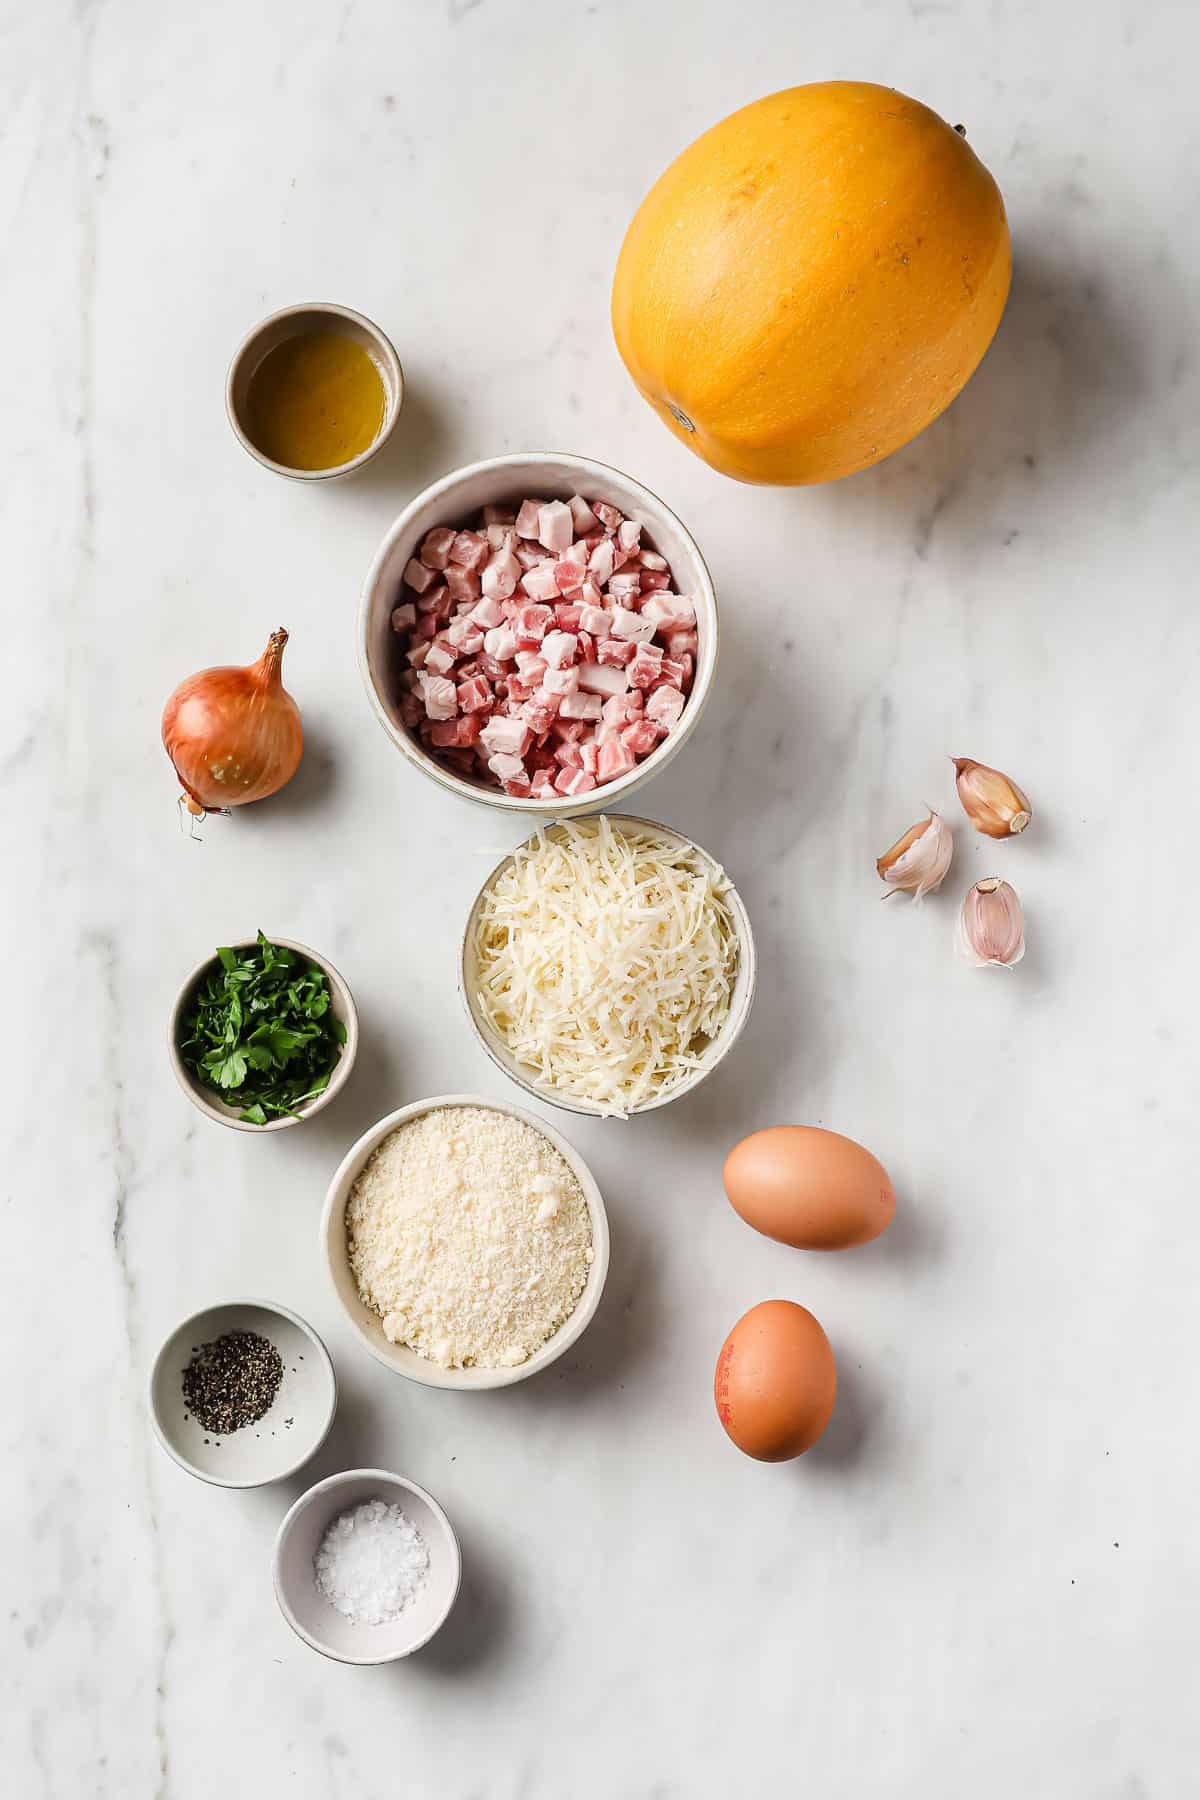 ingredients laid out to make spaghetti squash carbonara - spaghetti squash, pancetta, parmesan, egg, parsley, and onion